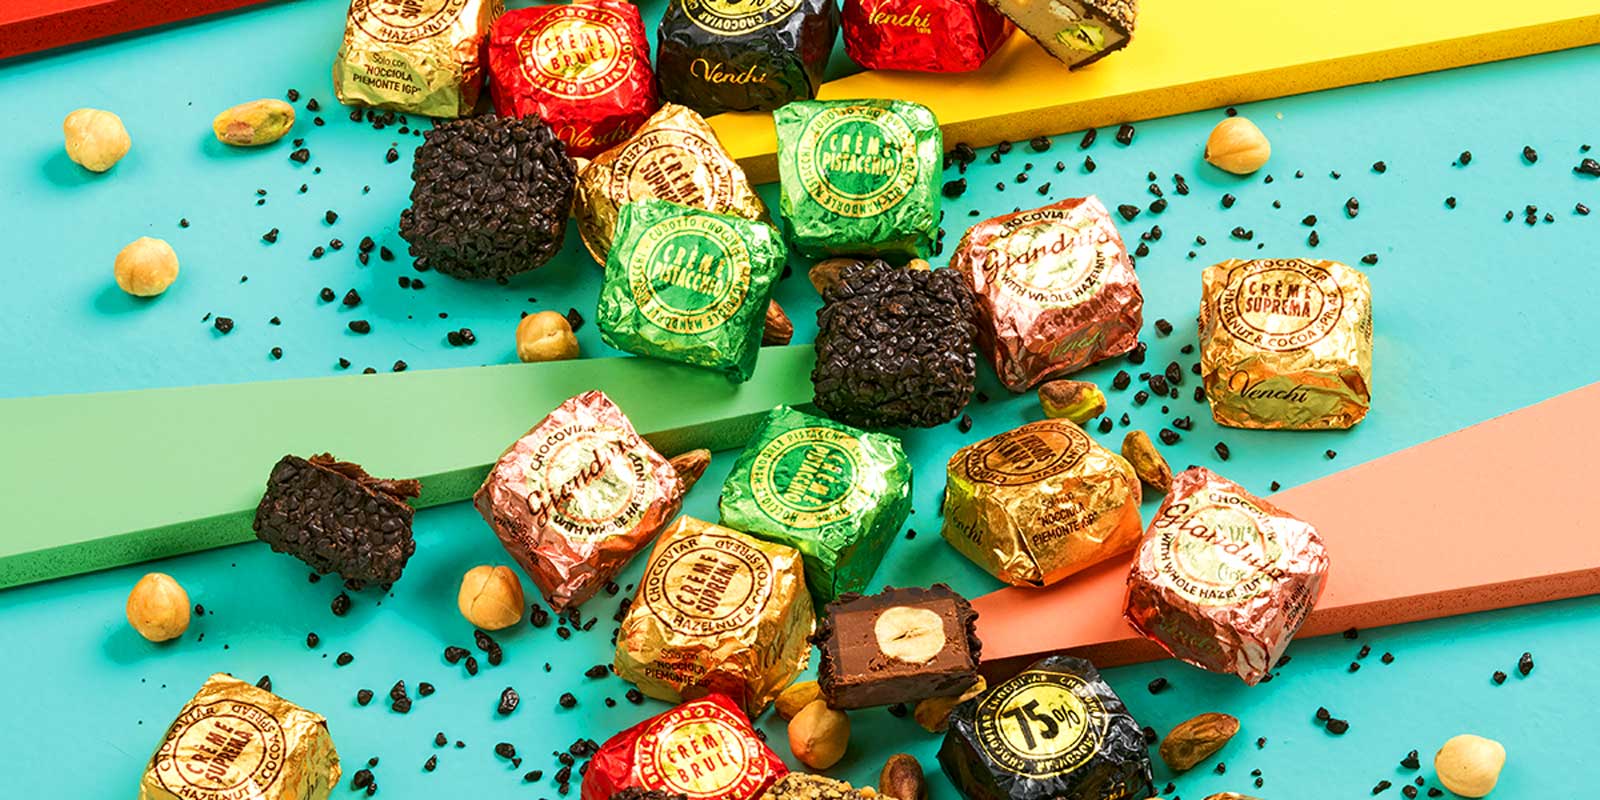 Venchi cokolade i praline iz Pijemonta Ukusni, domaci i prirodni recepti osmisljeni da vam pomognu u uzivanju.
Od 1878. nudimo trenutke radosti svaki dan u savrsenom talijanskom stilu, mislimo na vasu dobrobit.